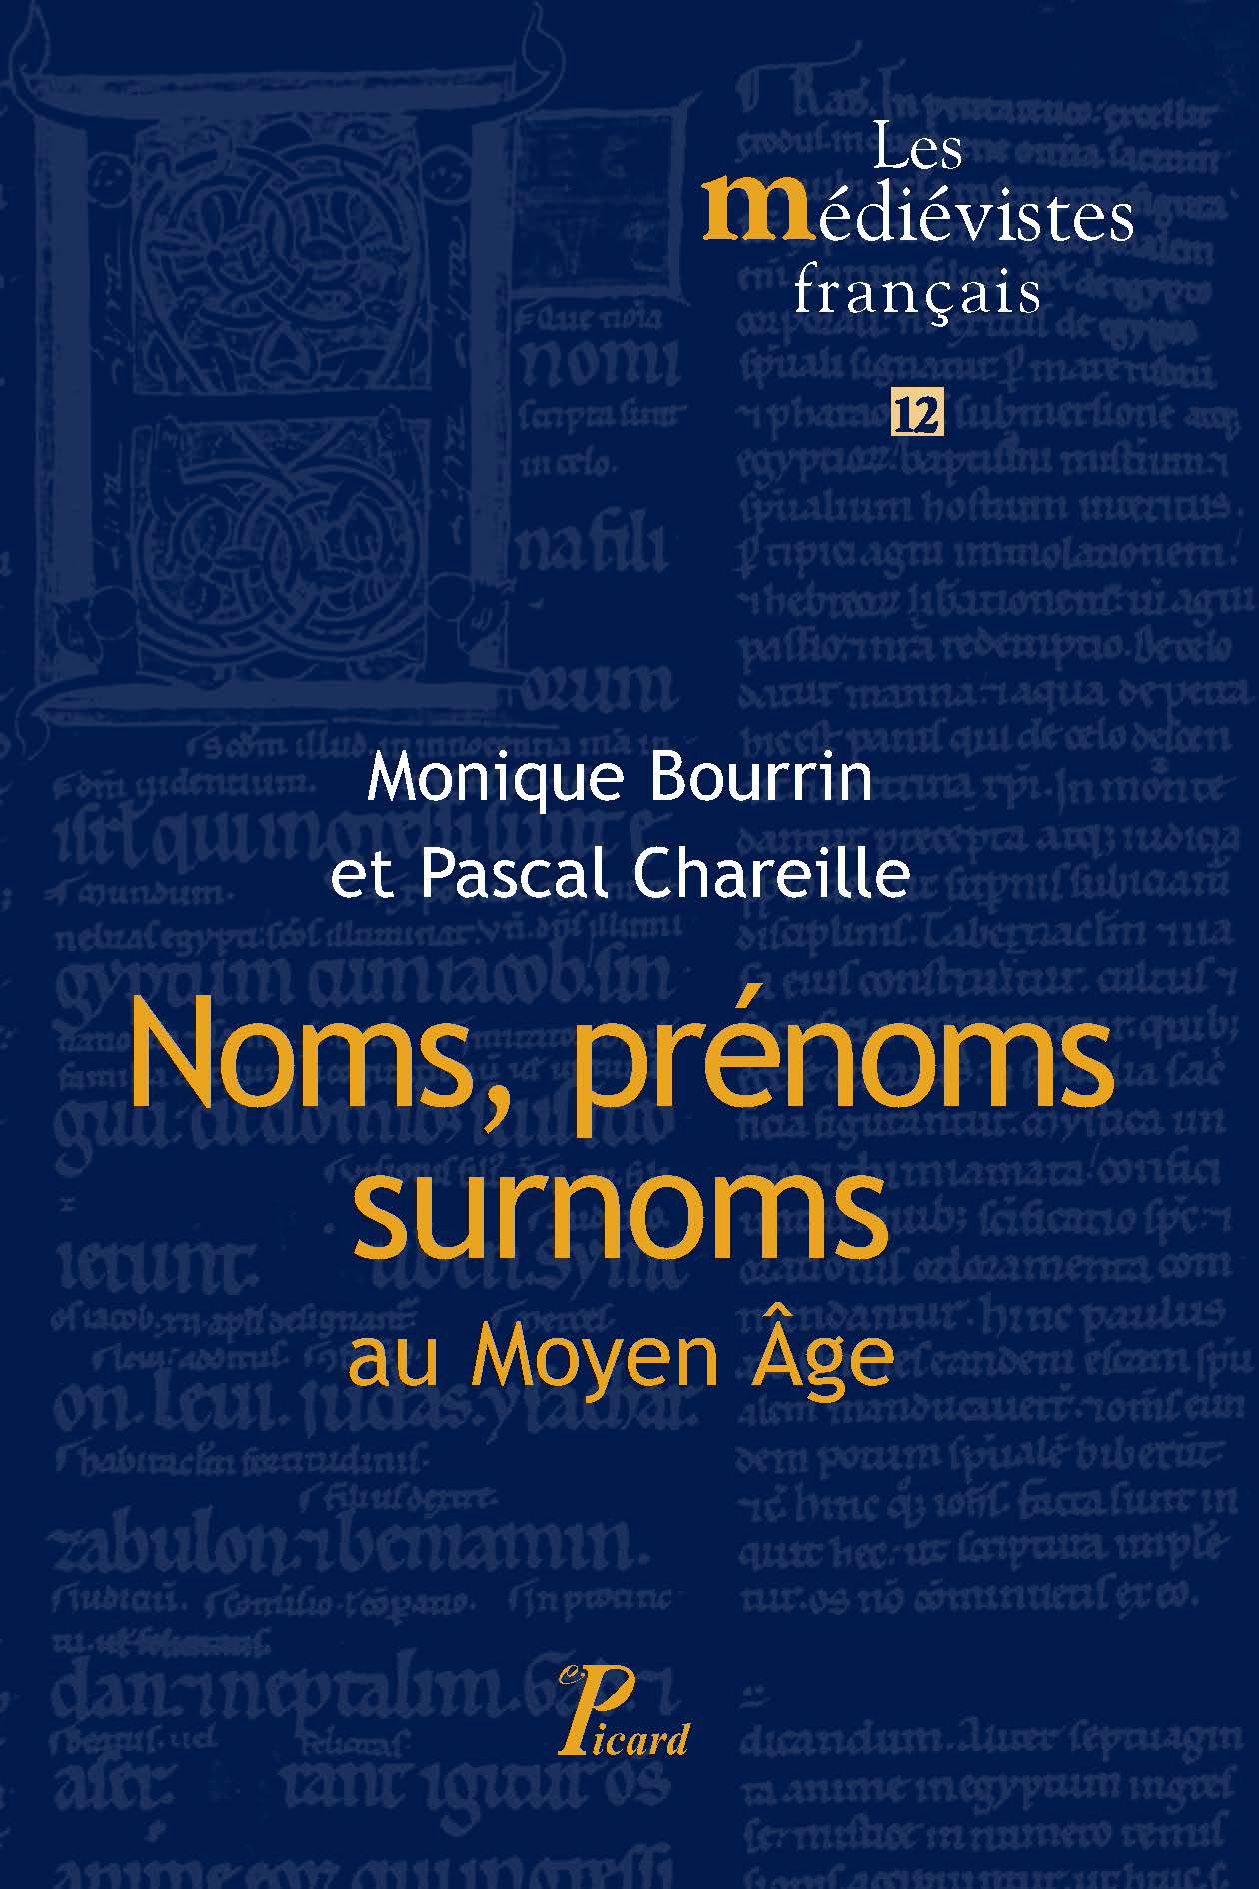 Noms, prénoms, surnoms au Moyen Âge, 2014, 288 p.